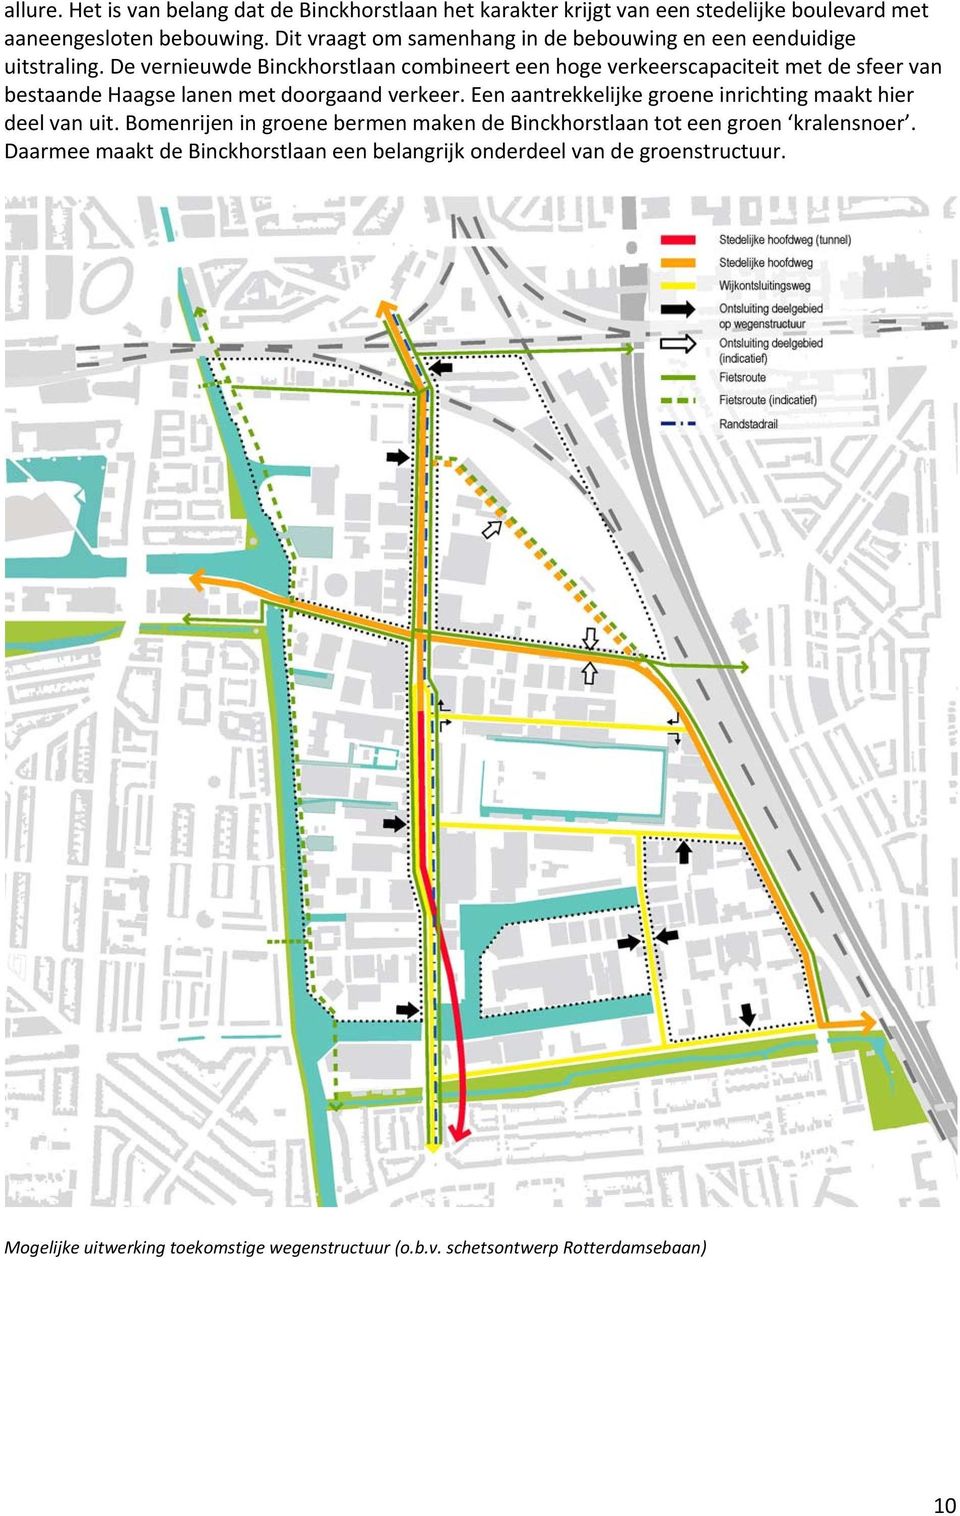 De vernieuwde Binckhorstlaan combineert een hoge verkeerscapaciteit met de sfeer van bestaande Haagse lanen met doorgaand verkeer.